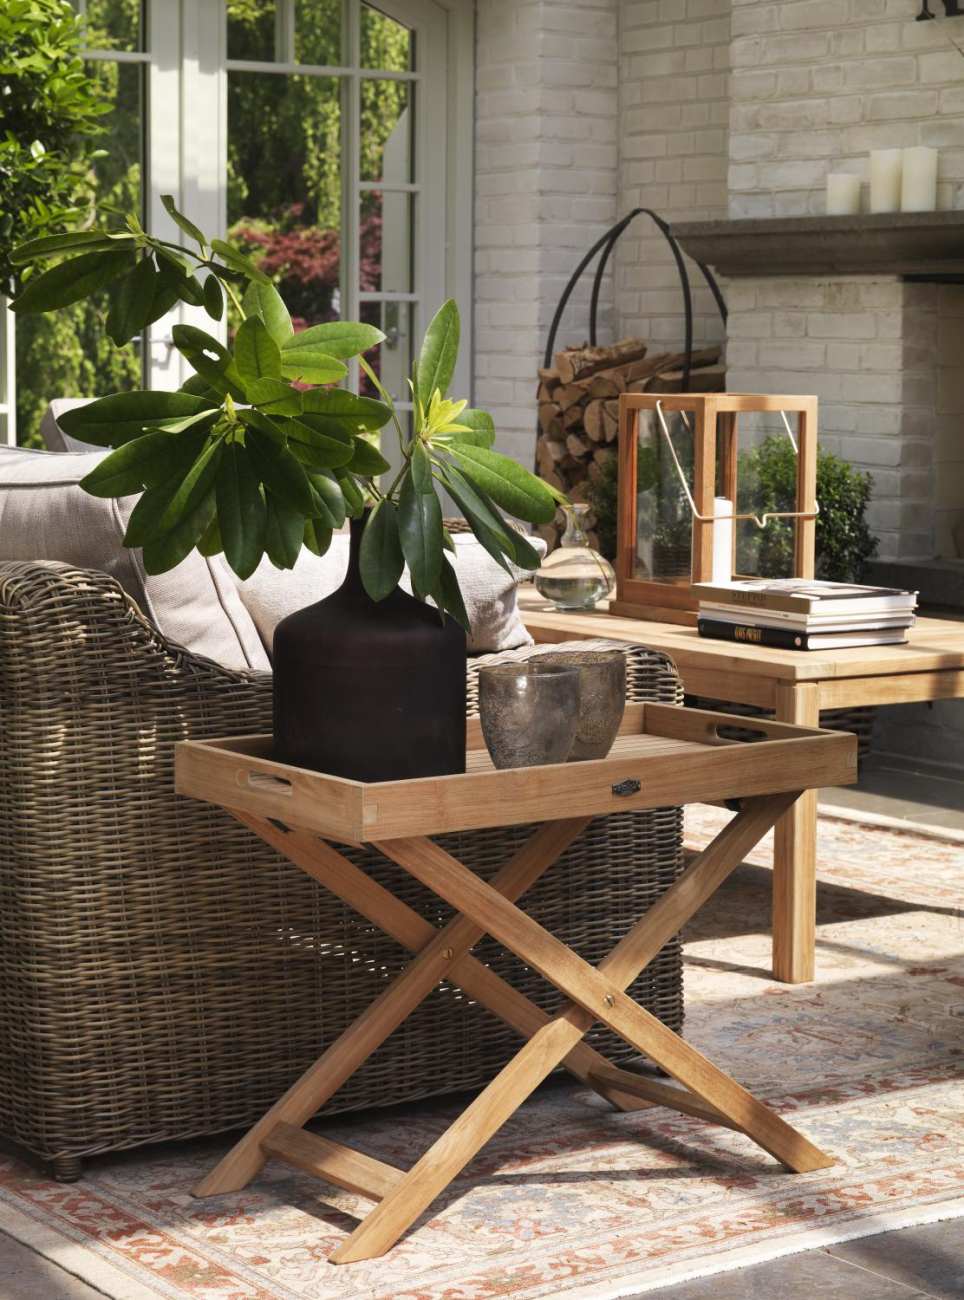 Der Gartenbeistelltisch Turin überzeugt mit seinem modernen Design. Gefertigt wurde die Tischplatte aus Teakholz und hat einen natürlichen Farbton. Das Gestell ist auch aus Teakholz und hat eine natürliche Farbe. Der Tisch besitzt eine Länge von 40 cm.